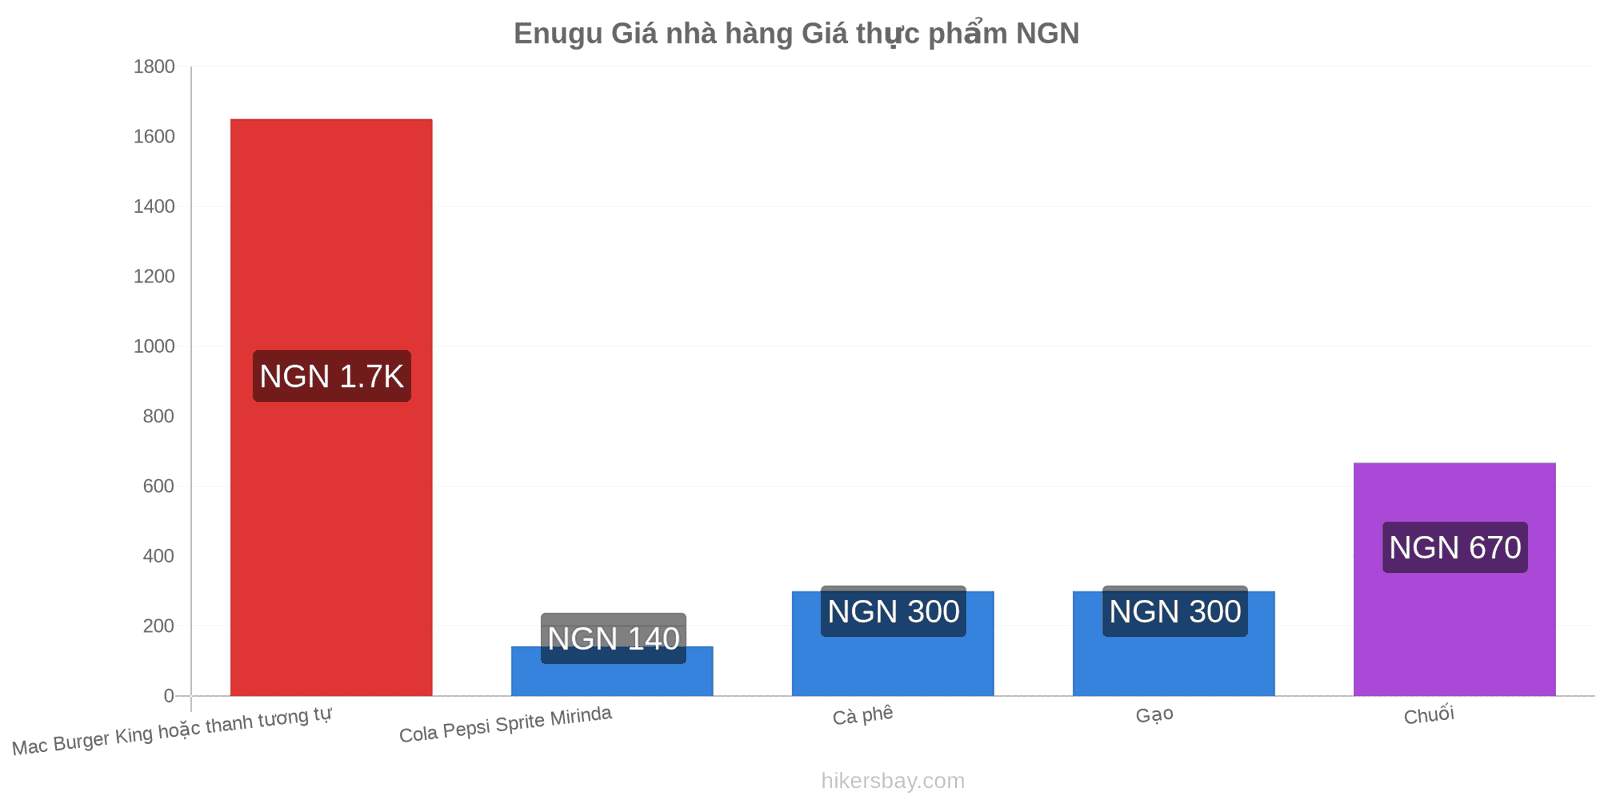 Enugu thay đổi giá cả hikersbay.com